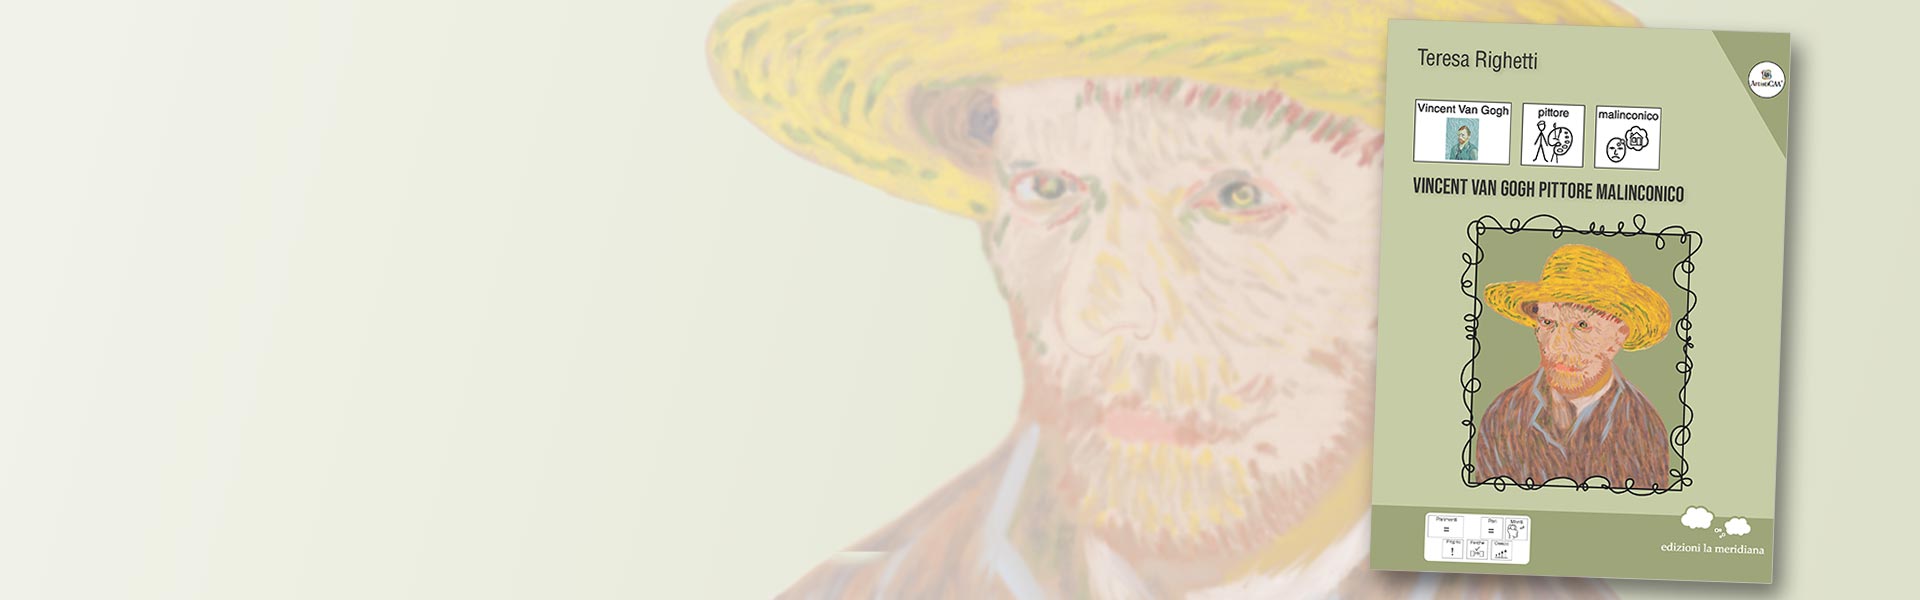 Vincent Van Gogh pittore malinconico di Teresa Righetti